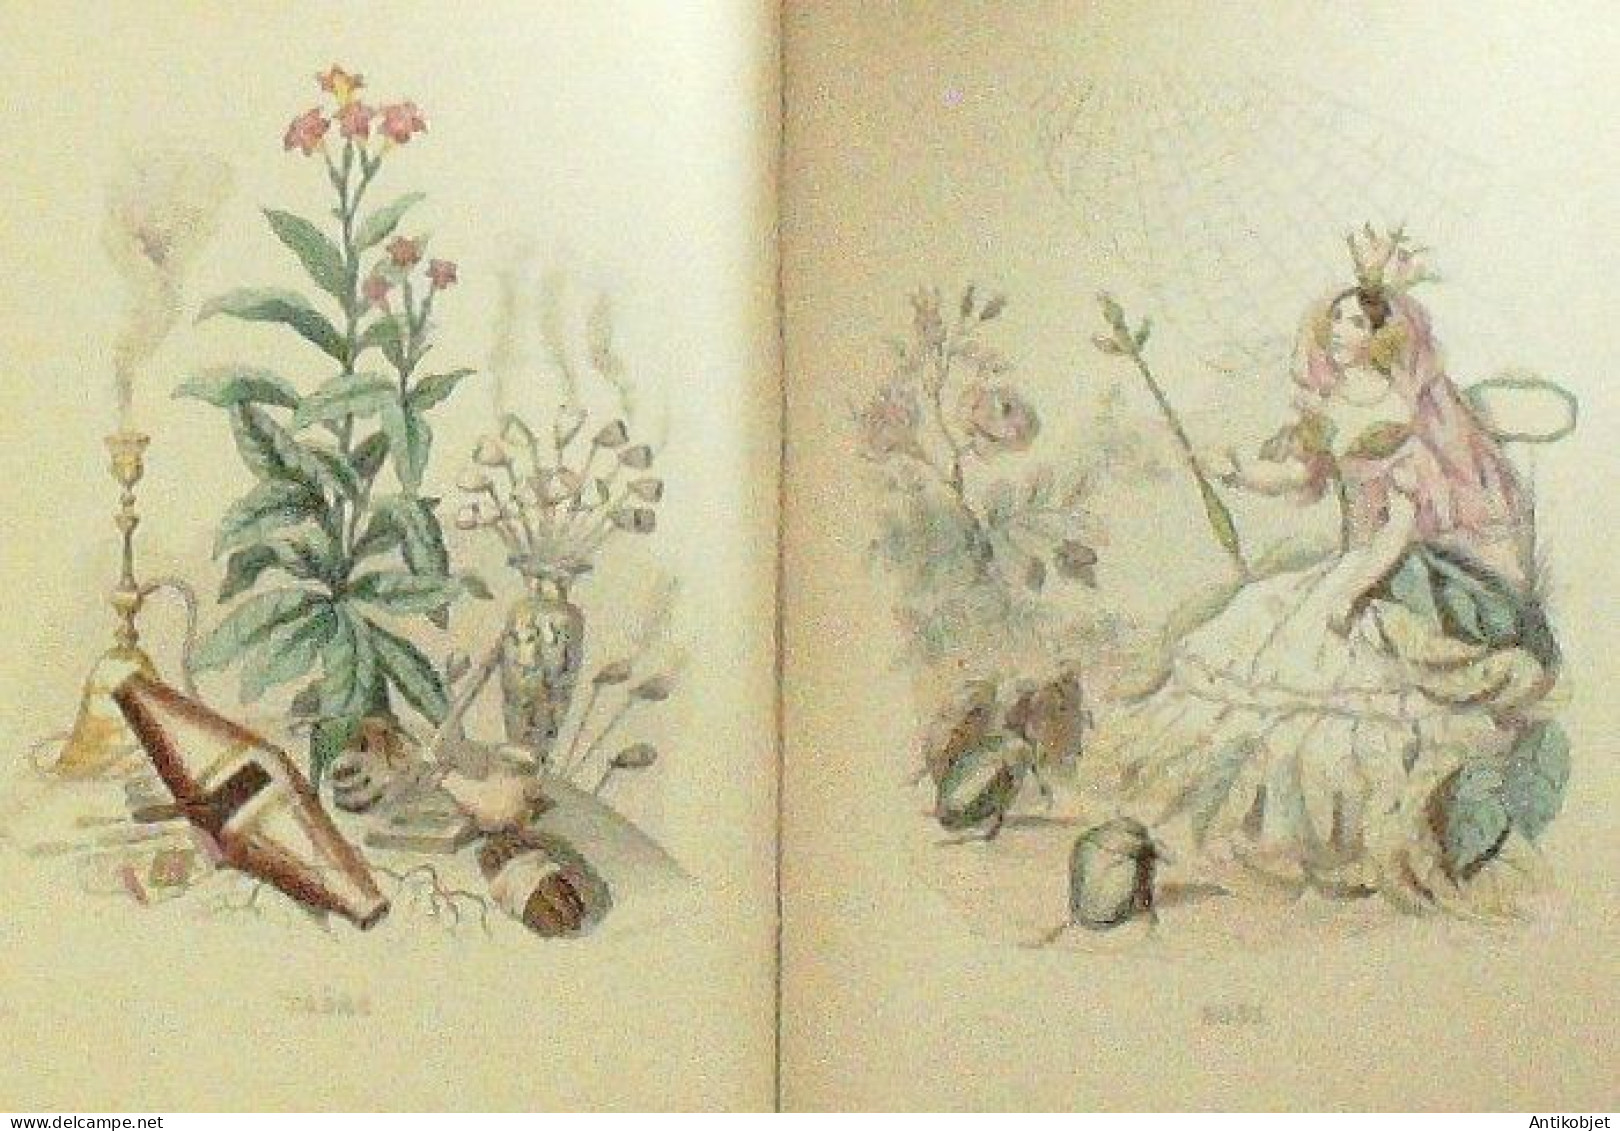 Grandville Jean-Jacques les fleurs animées 56 planches 1851